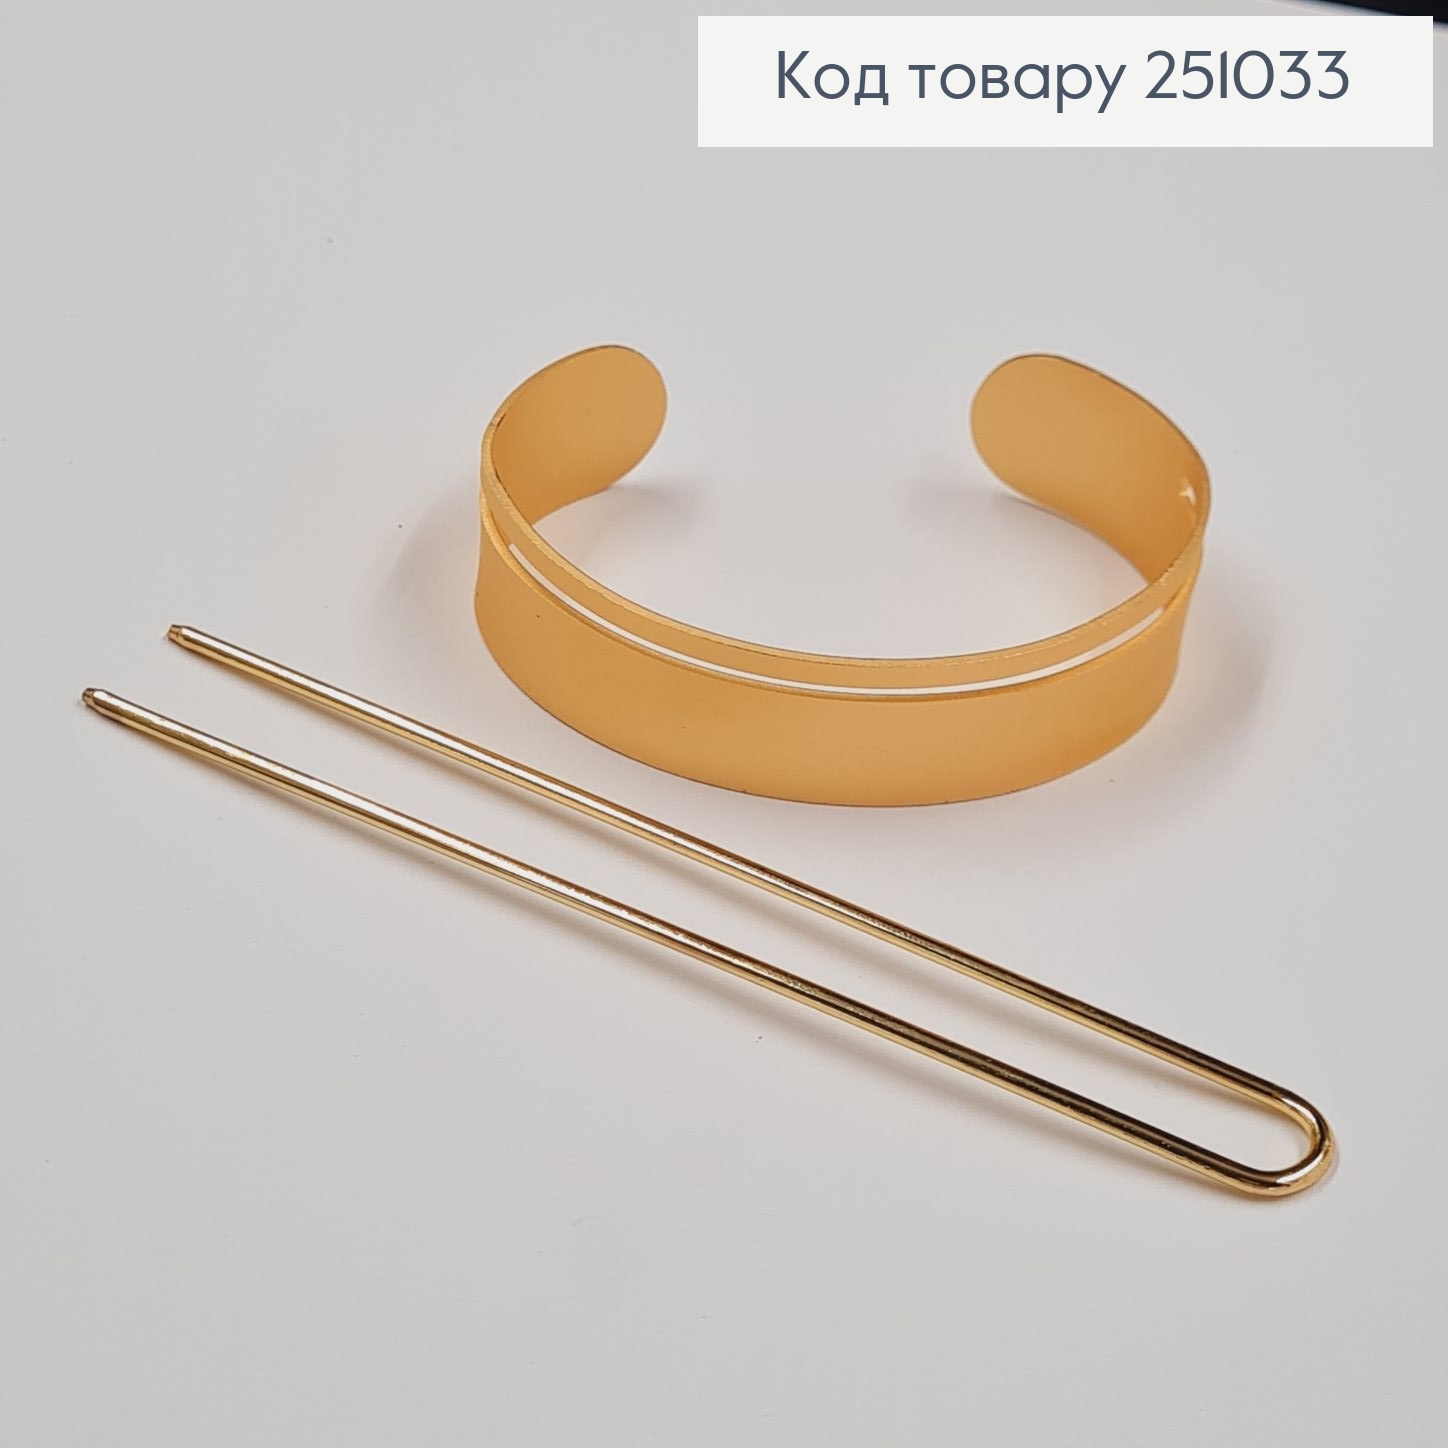 Кольцо металл з заколкой для гульки золотого цвета 251033 фото 2